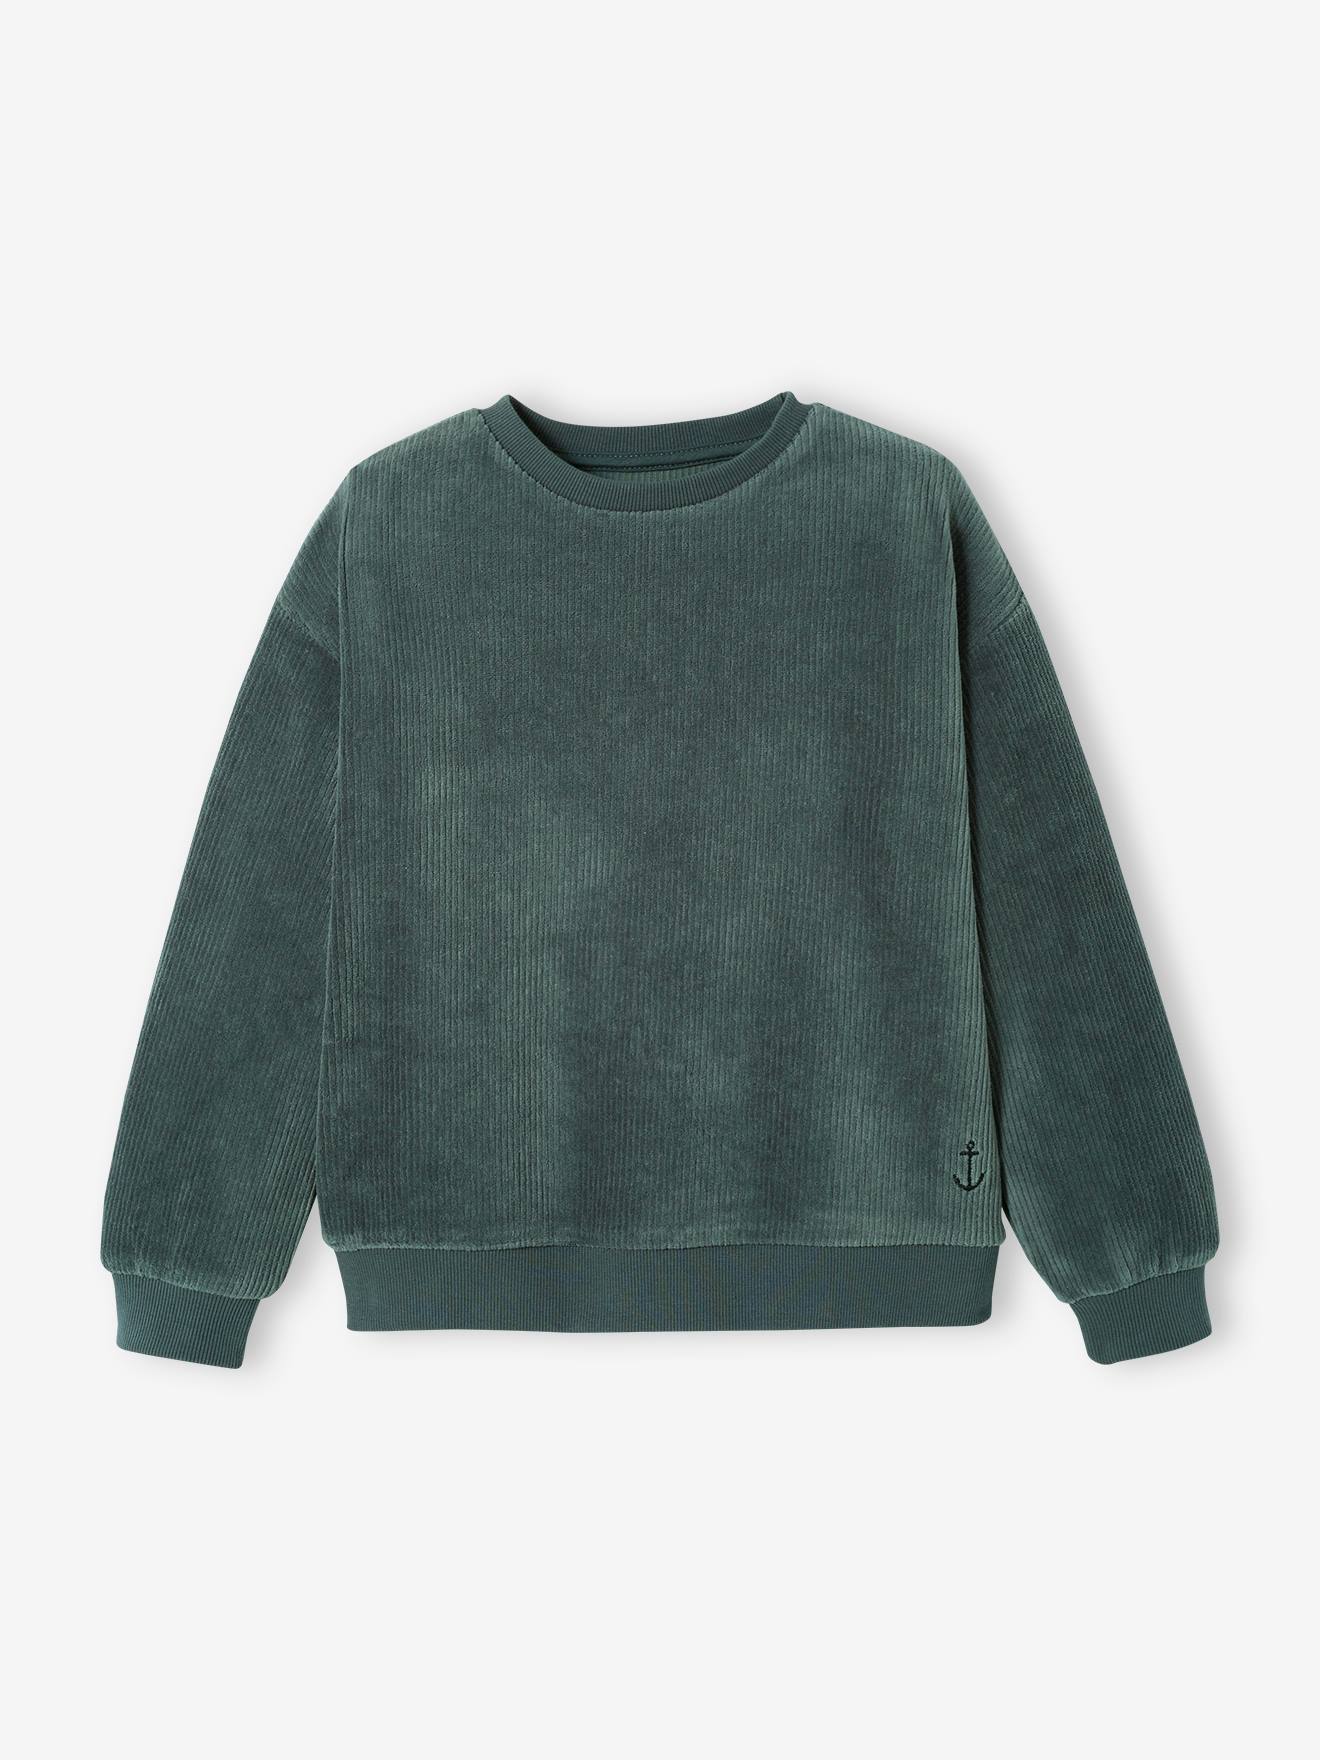 Jongenssweater in rubfluweel groengrijs